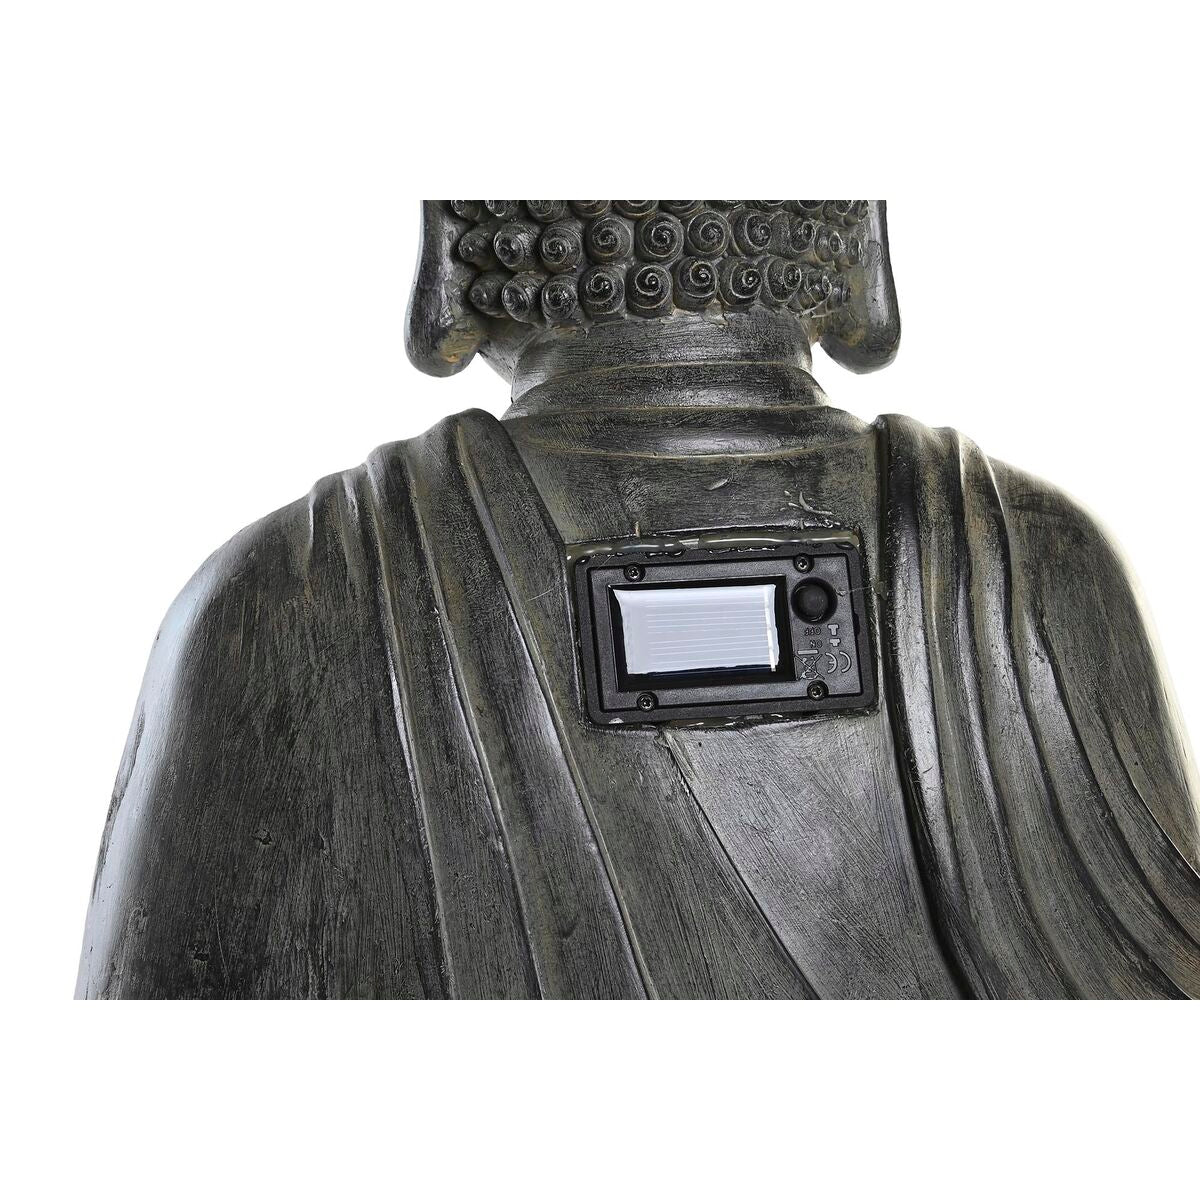 Buddha 40,5 x 30 x 57 cm